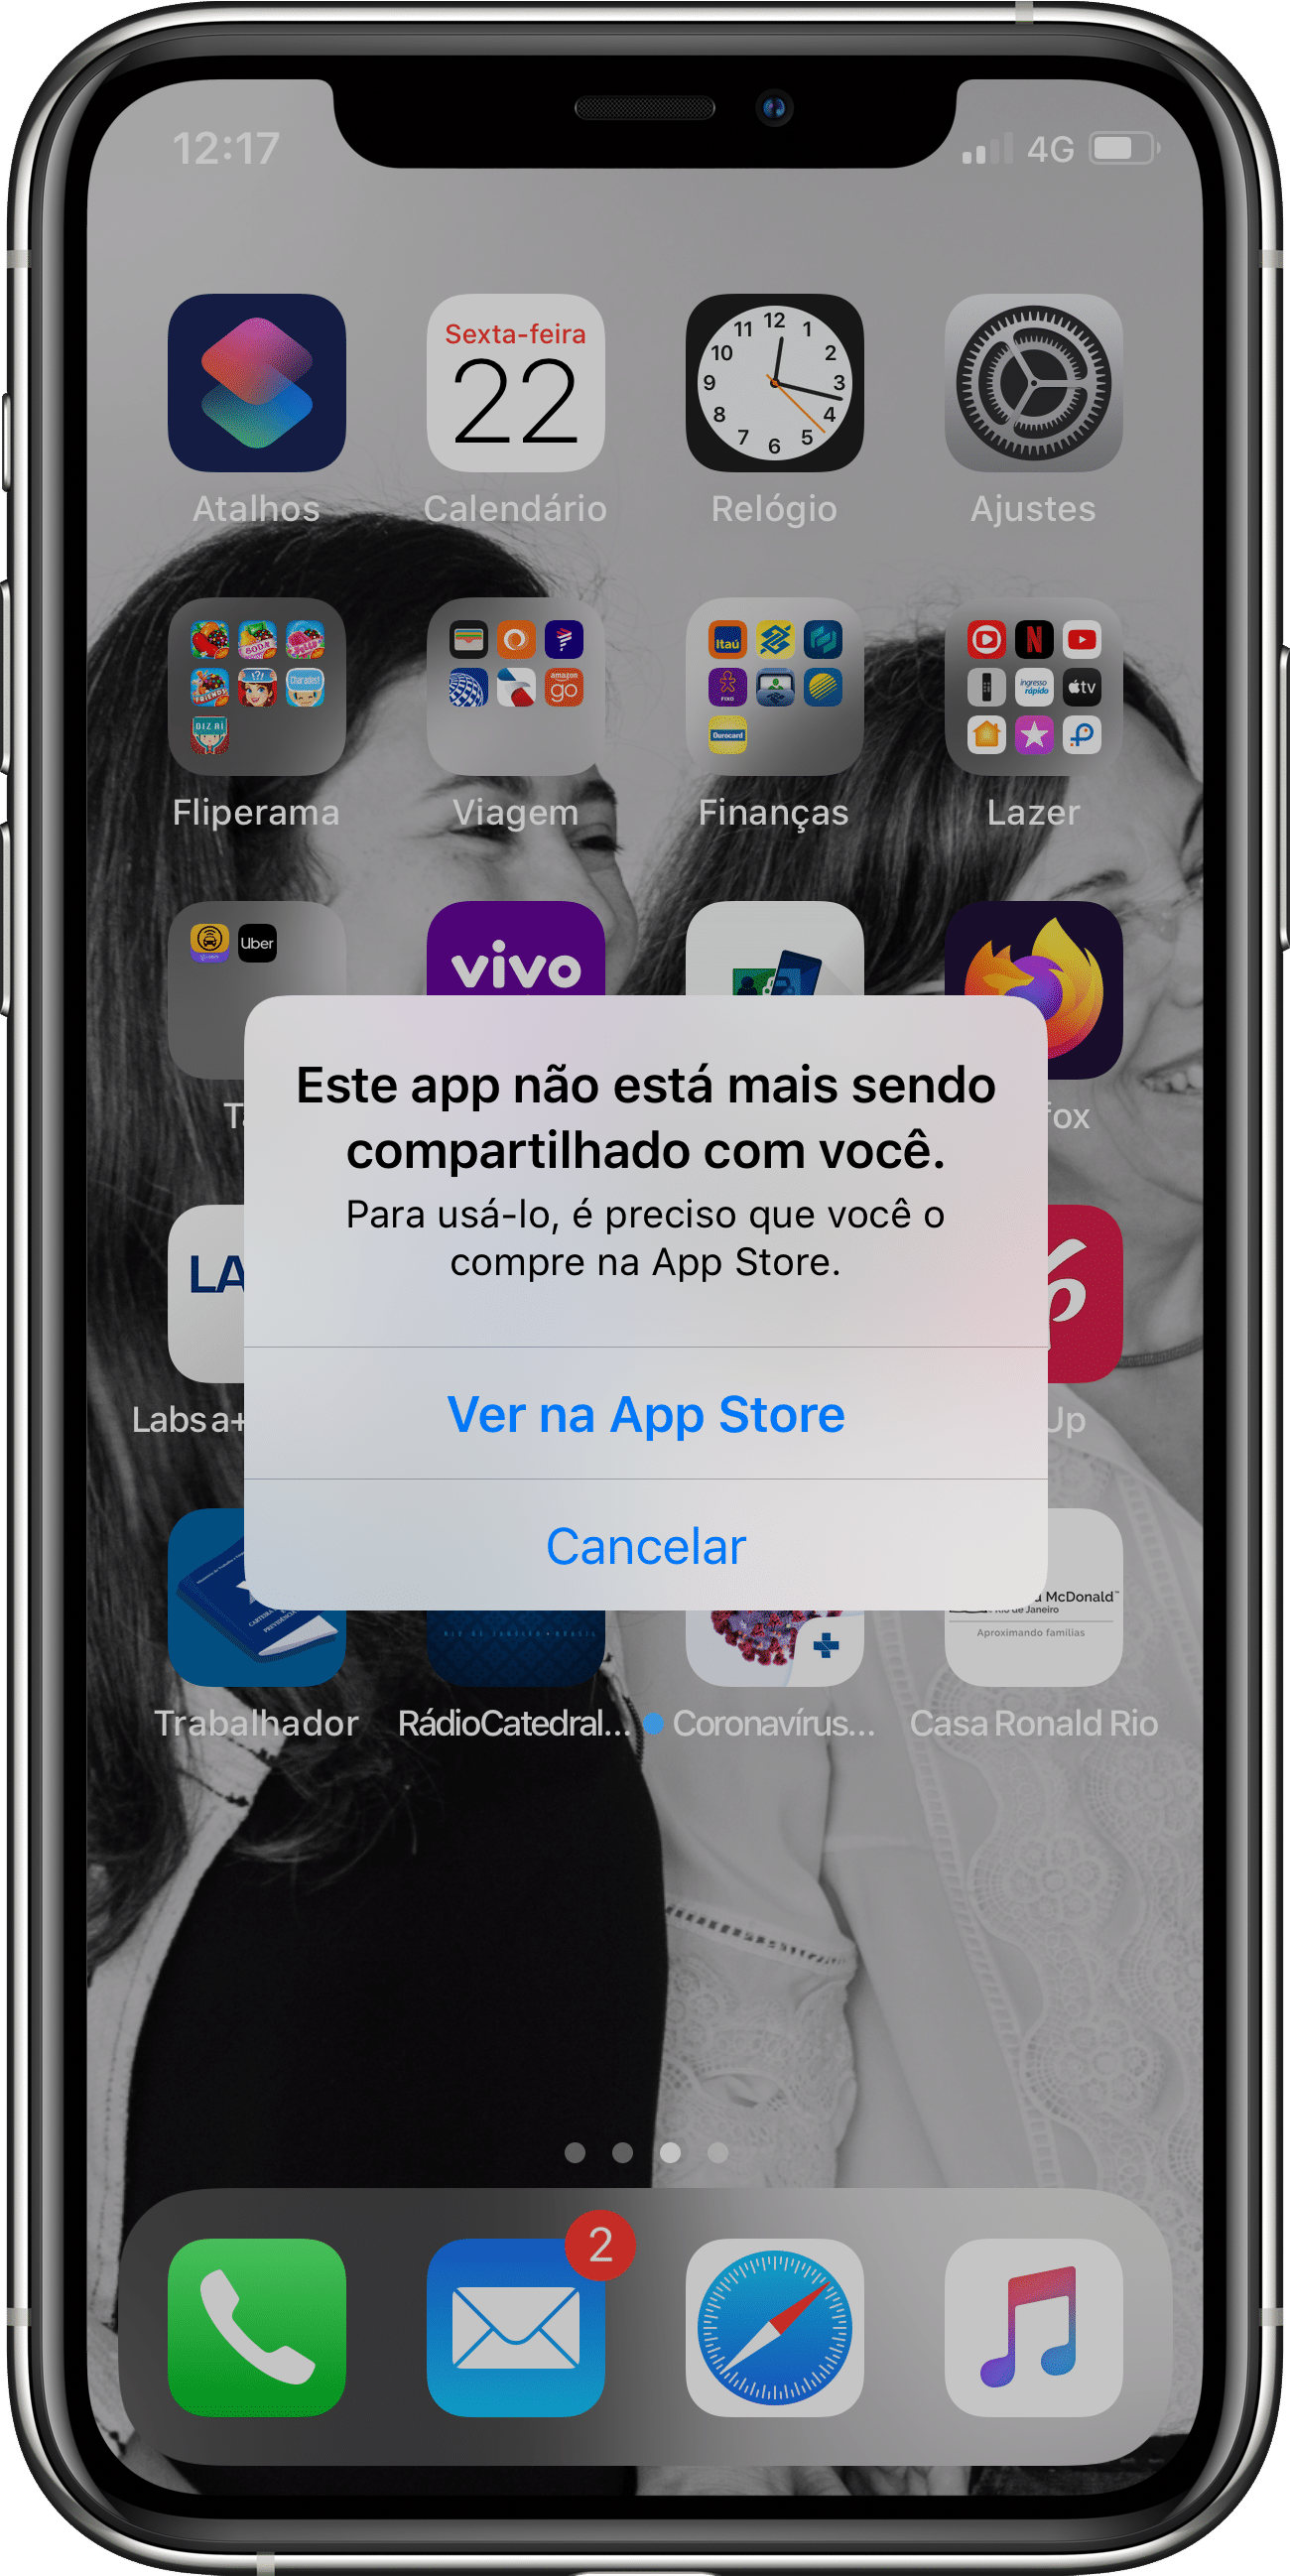 Bog no iOS 13.5